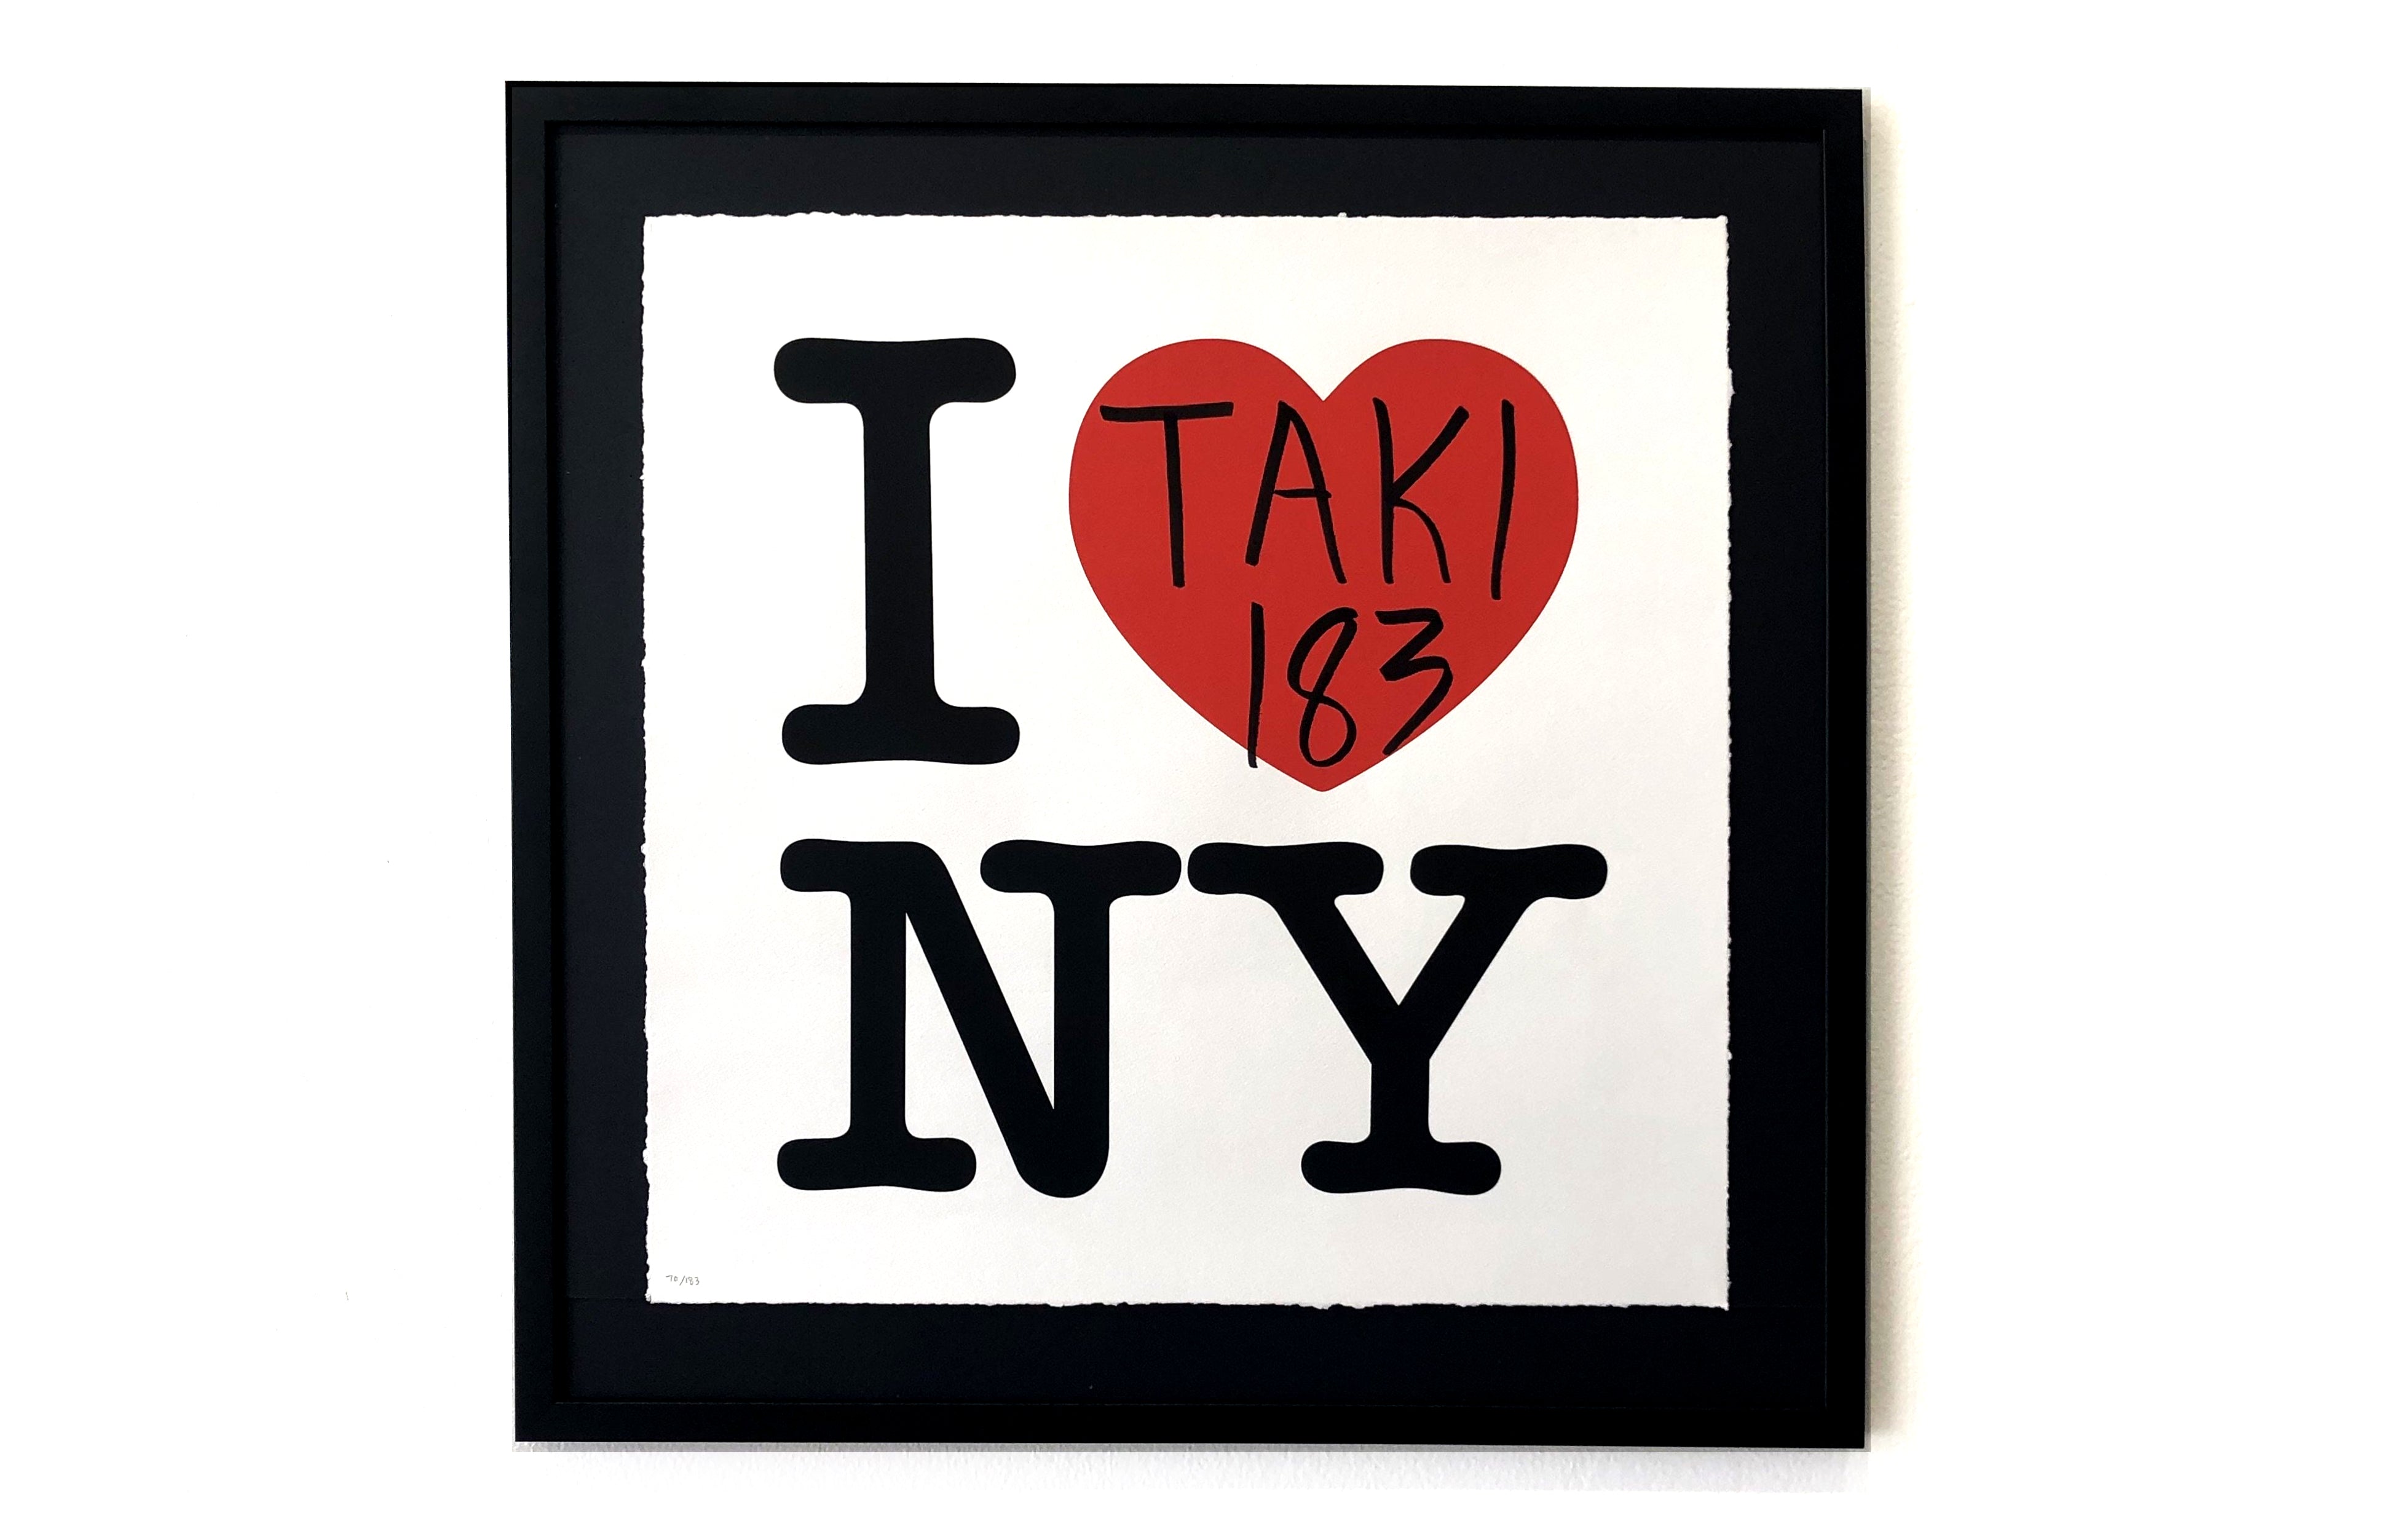 I Heart NY by TAKI 183 - Galerie F